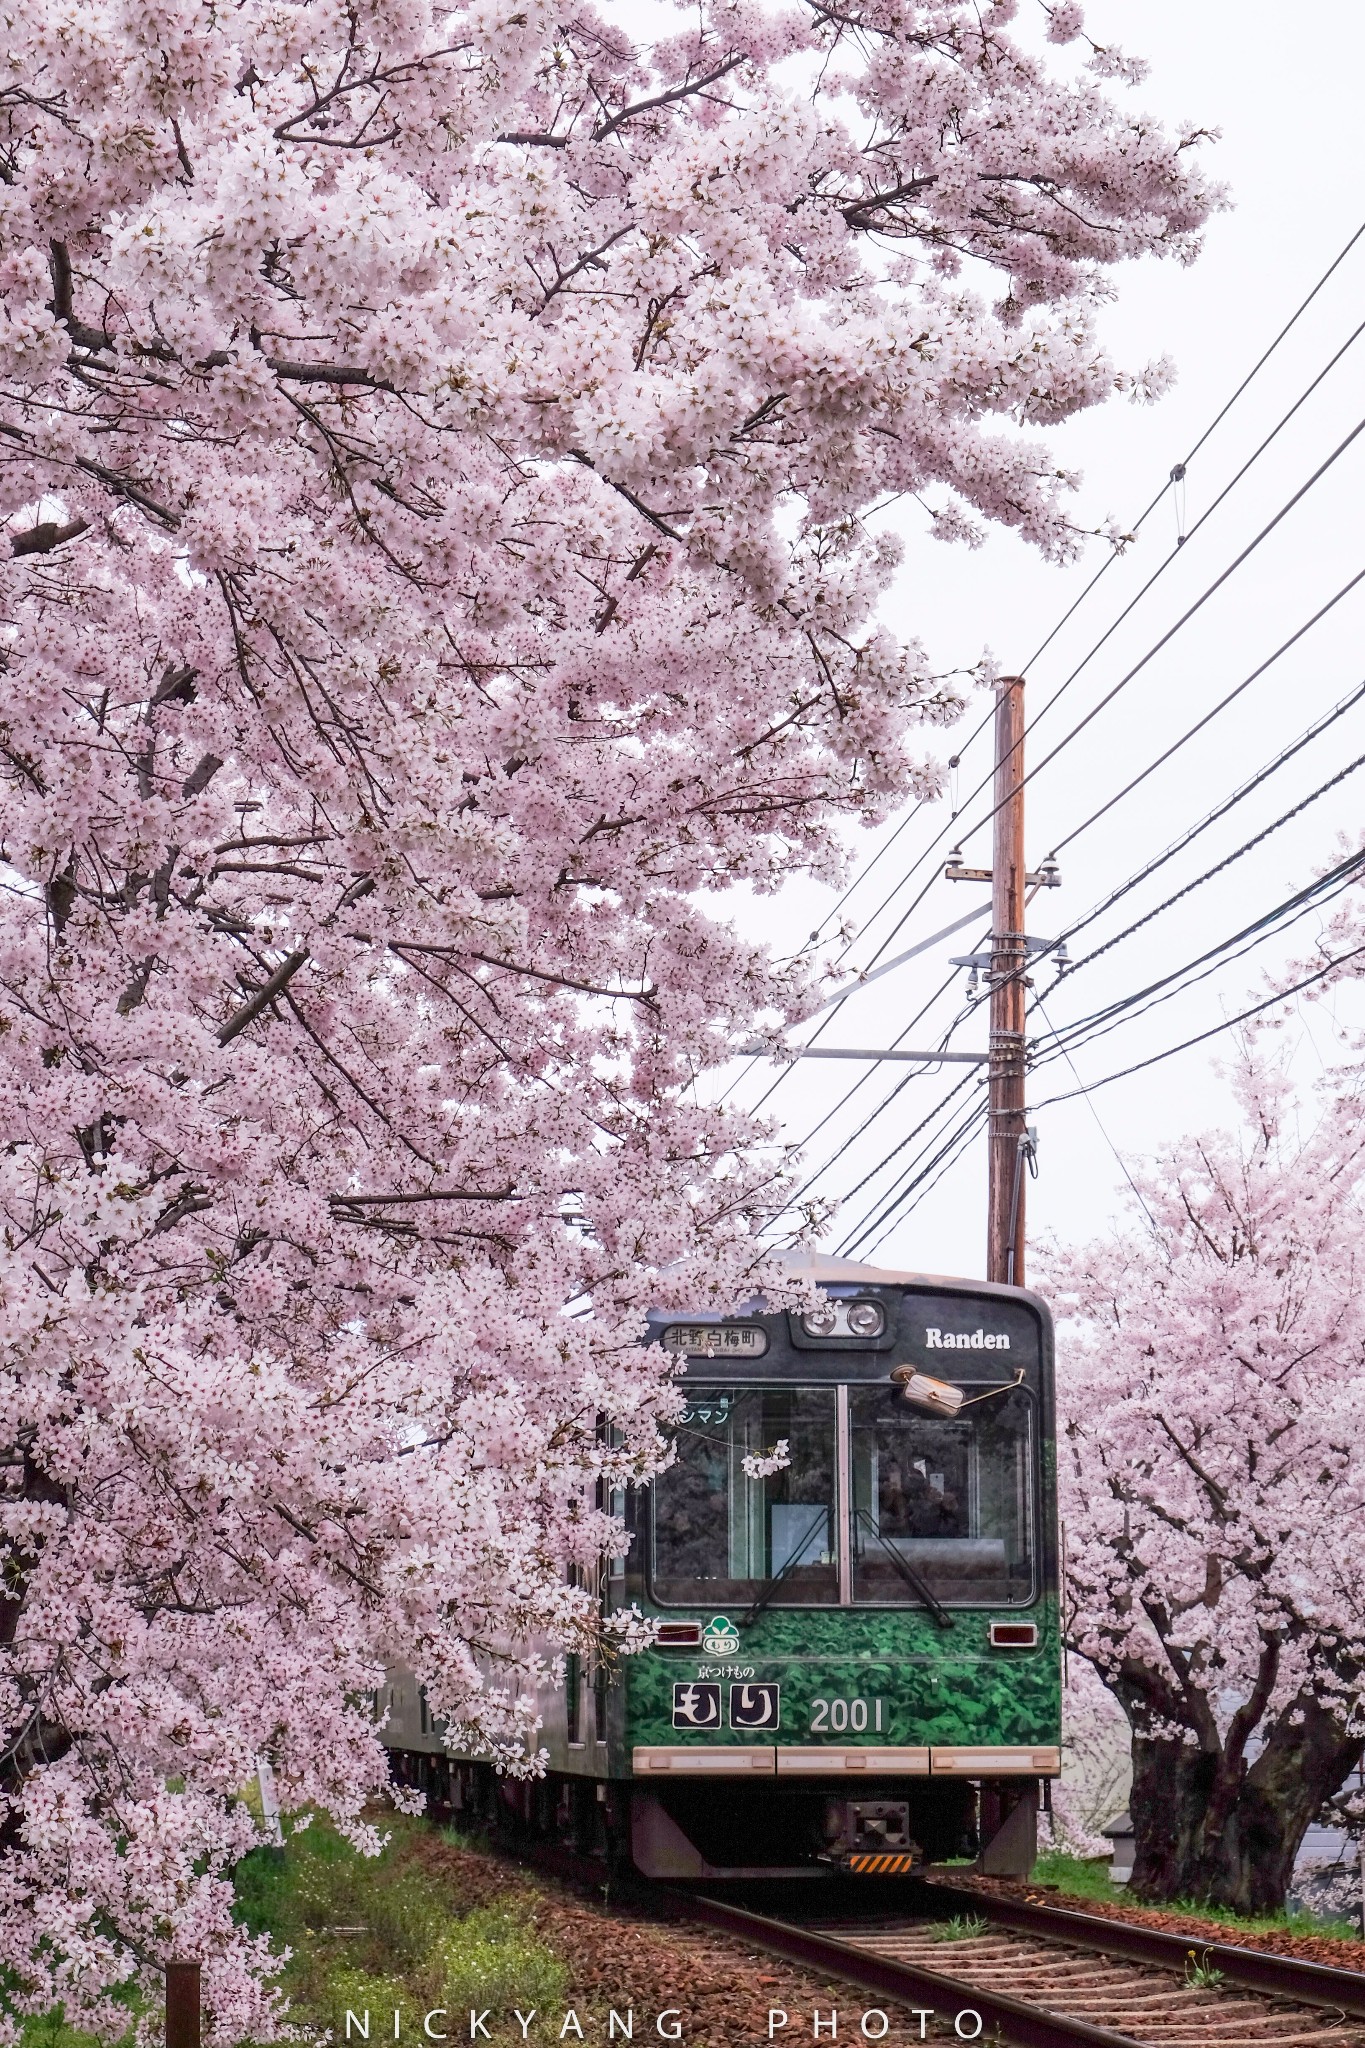 都超好看啊 当然,日本的火车不是都是这样非常非常美丽的樱花火车哦